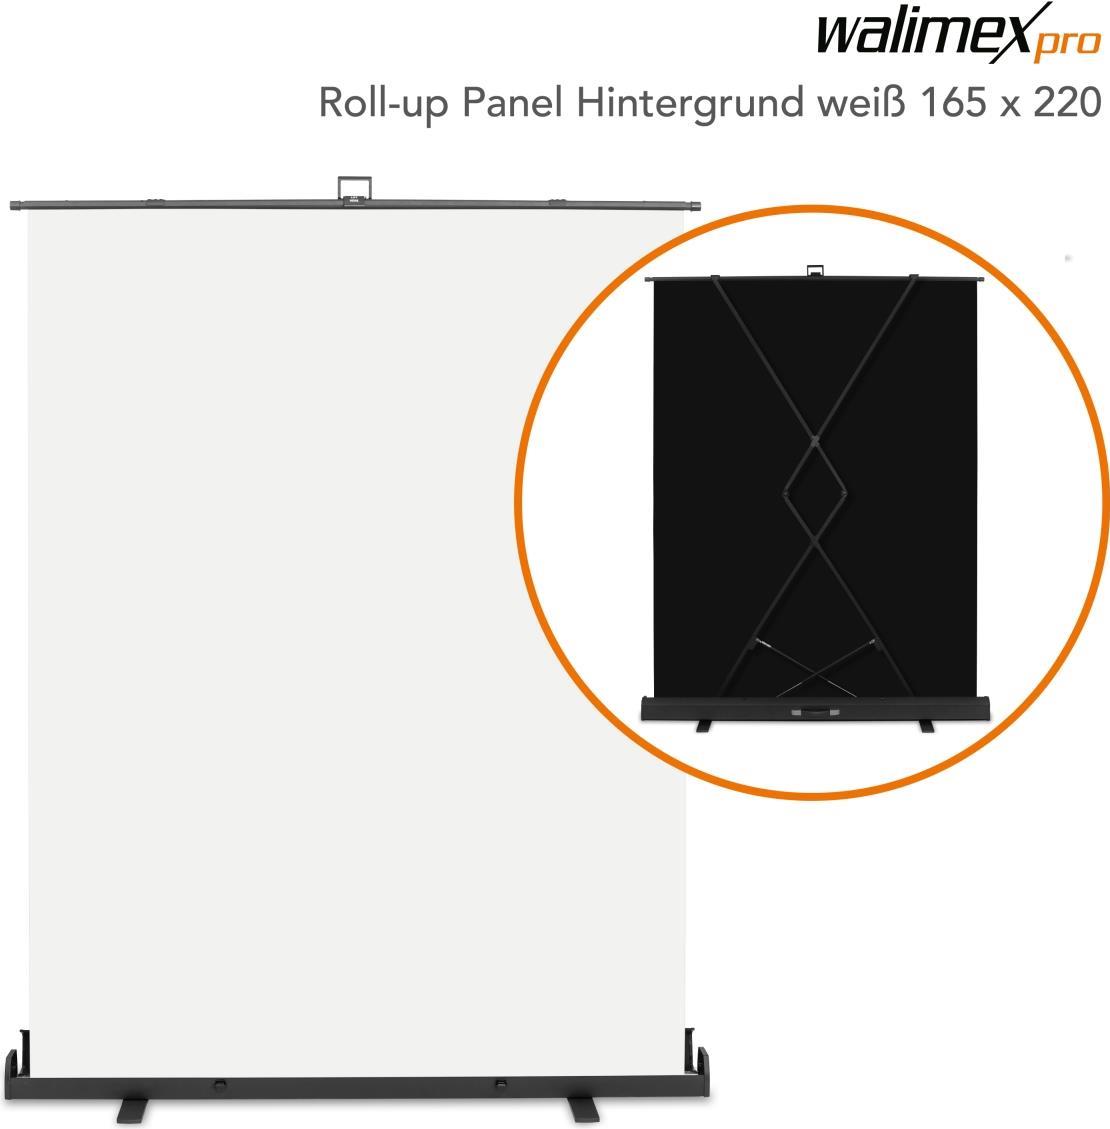 WALSER Walimex pro Roll-up Panel Hintergrund weiß 165x220 (23205)